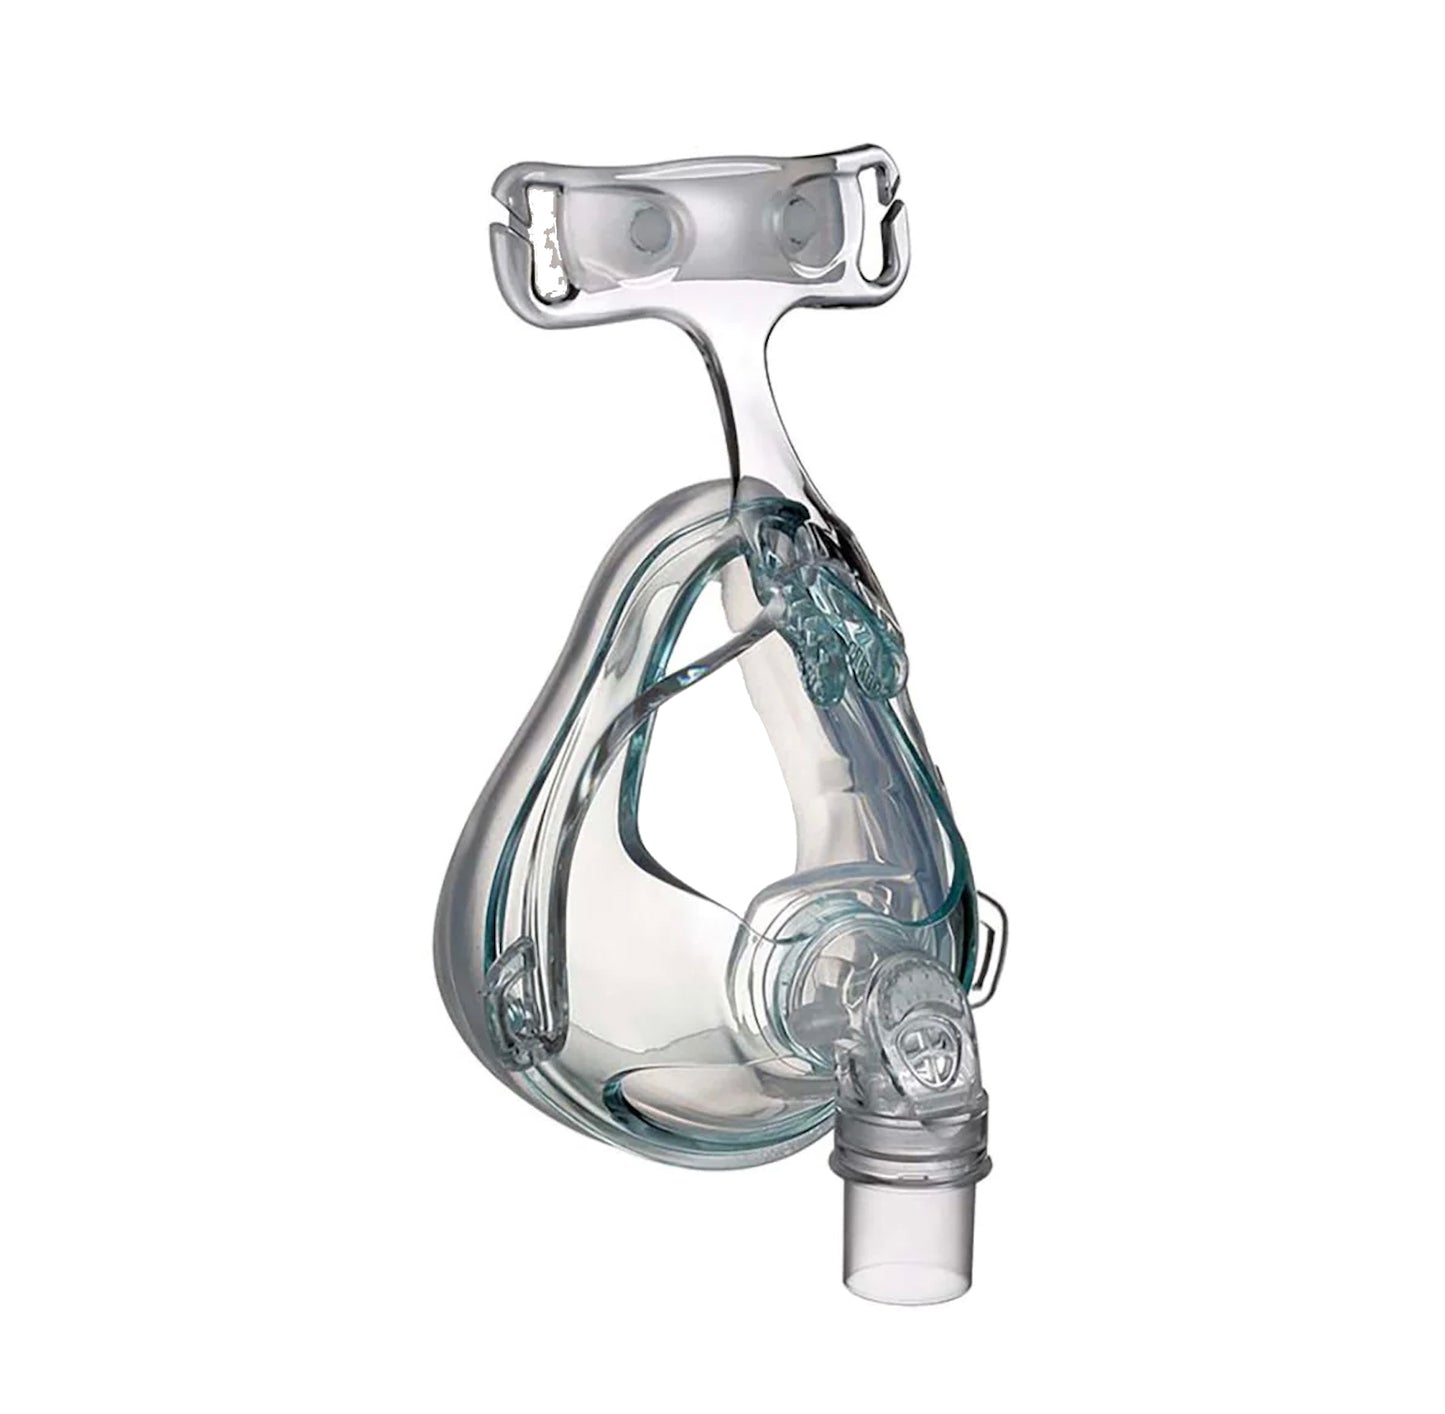 Hoffrichter Cirri Comfort Mund-Nasenmaske NIPPV - inkl. Kopfband und Maskenkissen , erhältlich in S, M oder L - Full Face CPAP Mask - ohne Ventil (NV) für nicht -invasiven Beatmung